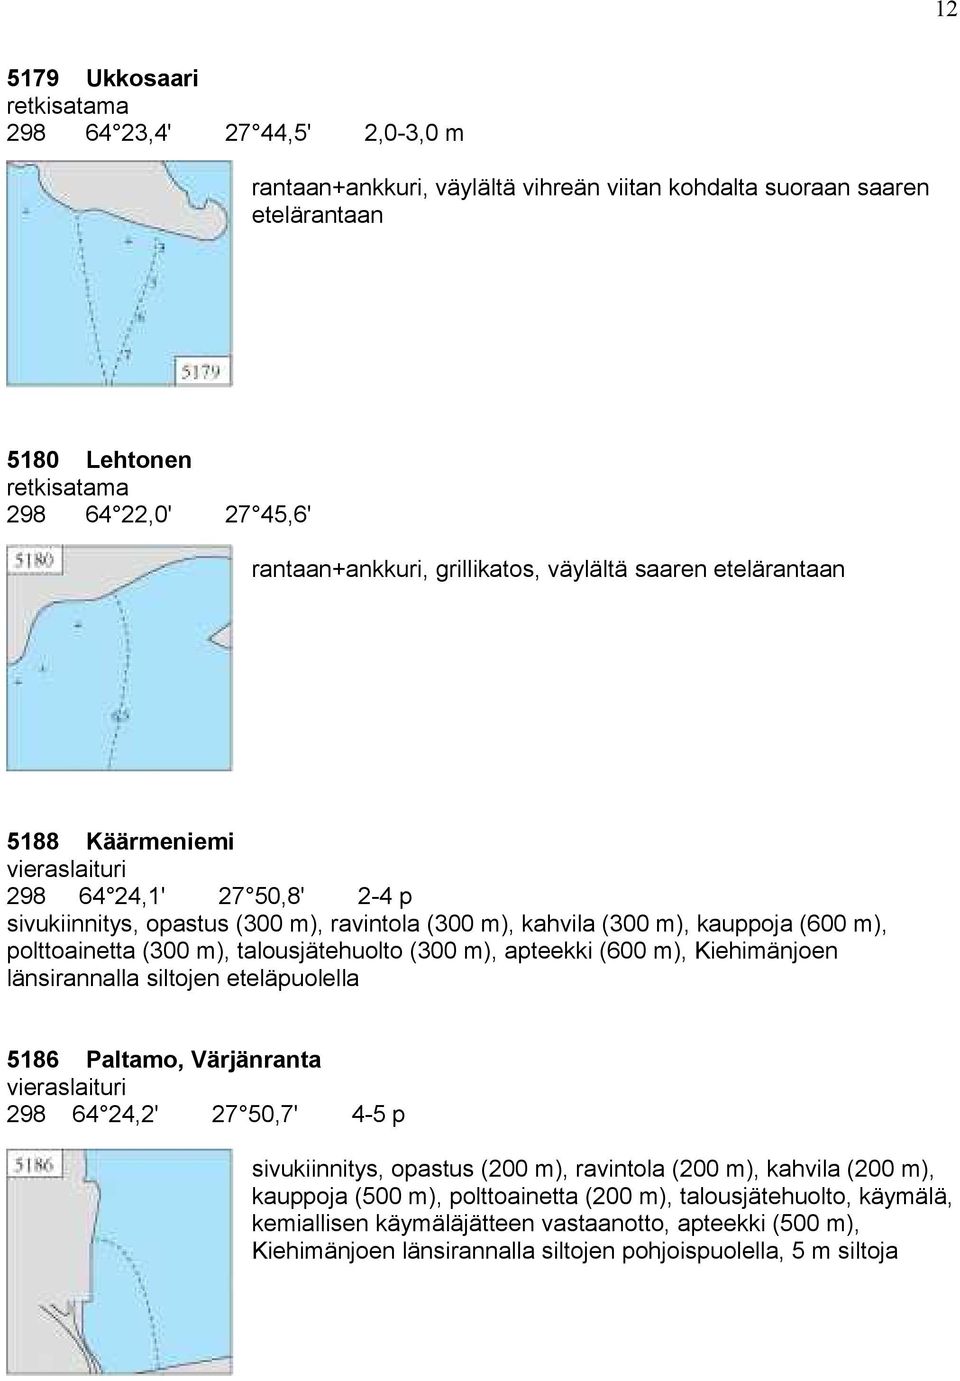 talousjätehuolto (300 m), apteekki (600 m), Kiehimänjoen länsirannalla siltojen eteläpuolella 5186 Paltamo, Värjänranta 298 64 24,2' 27 50,7' 4-5 p sivukiinnitys, opastus (200 m), ravintola (200